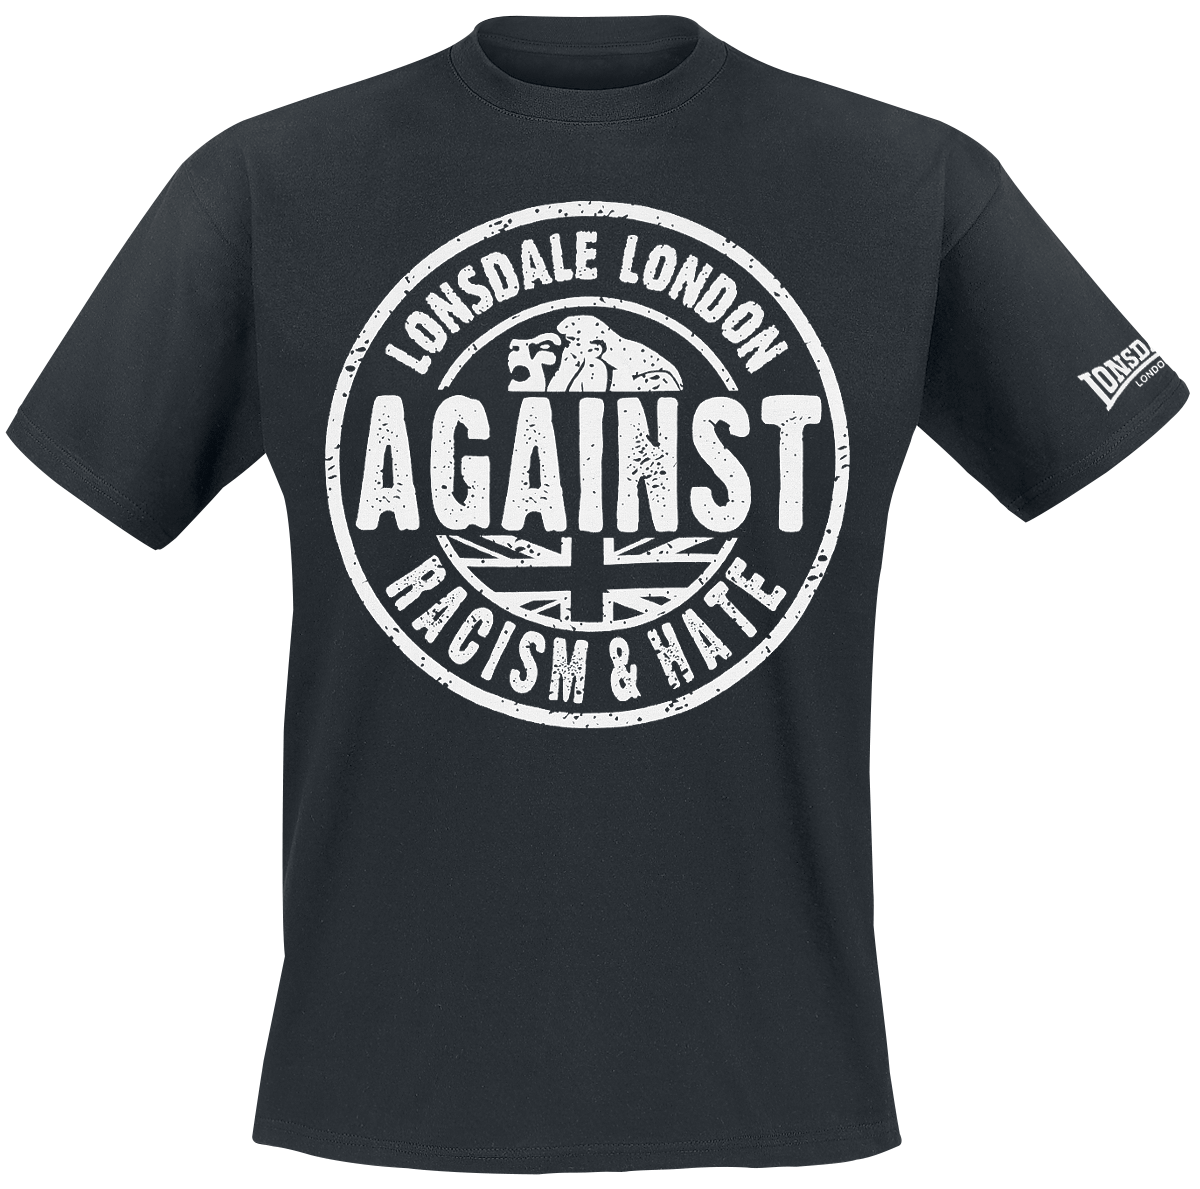 Lonsdale London - Against Racism - T-Shirt - schwarz